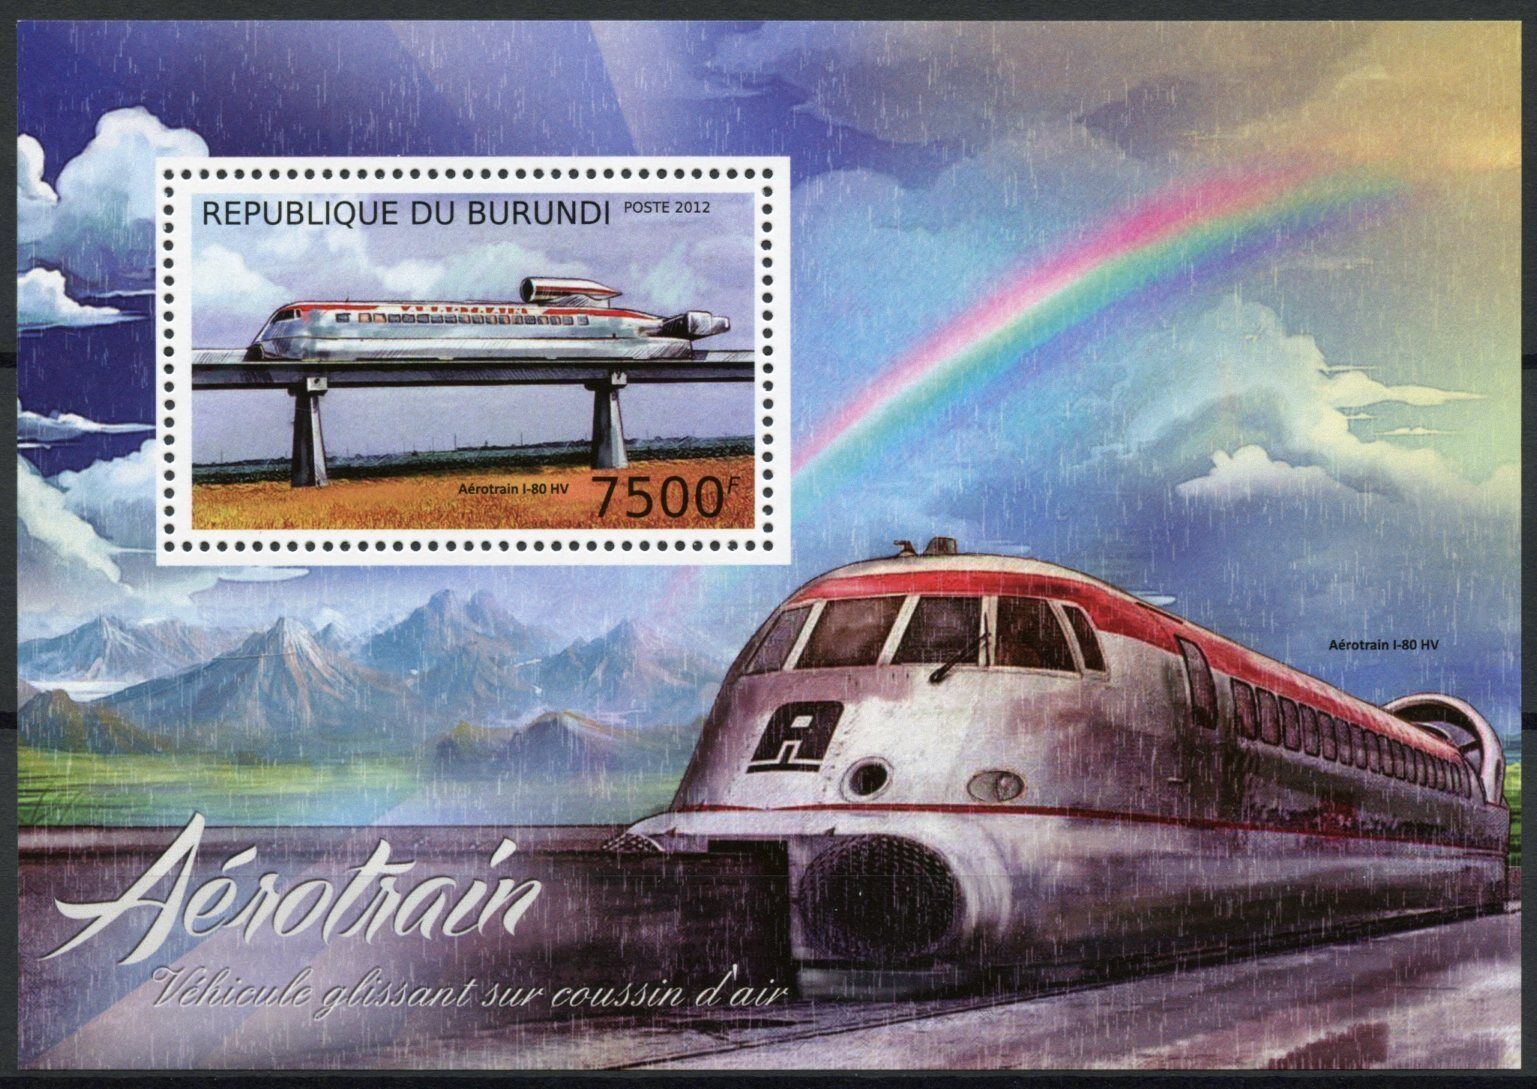 Burundi 2012 MNH Trains Stamps Skytrain Aerotrain I-80 HV Railways Rail 1v S/S